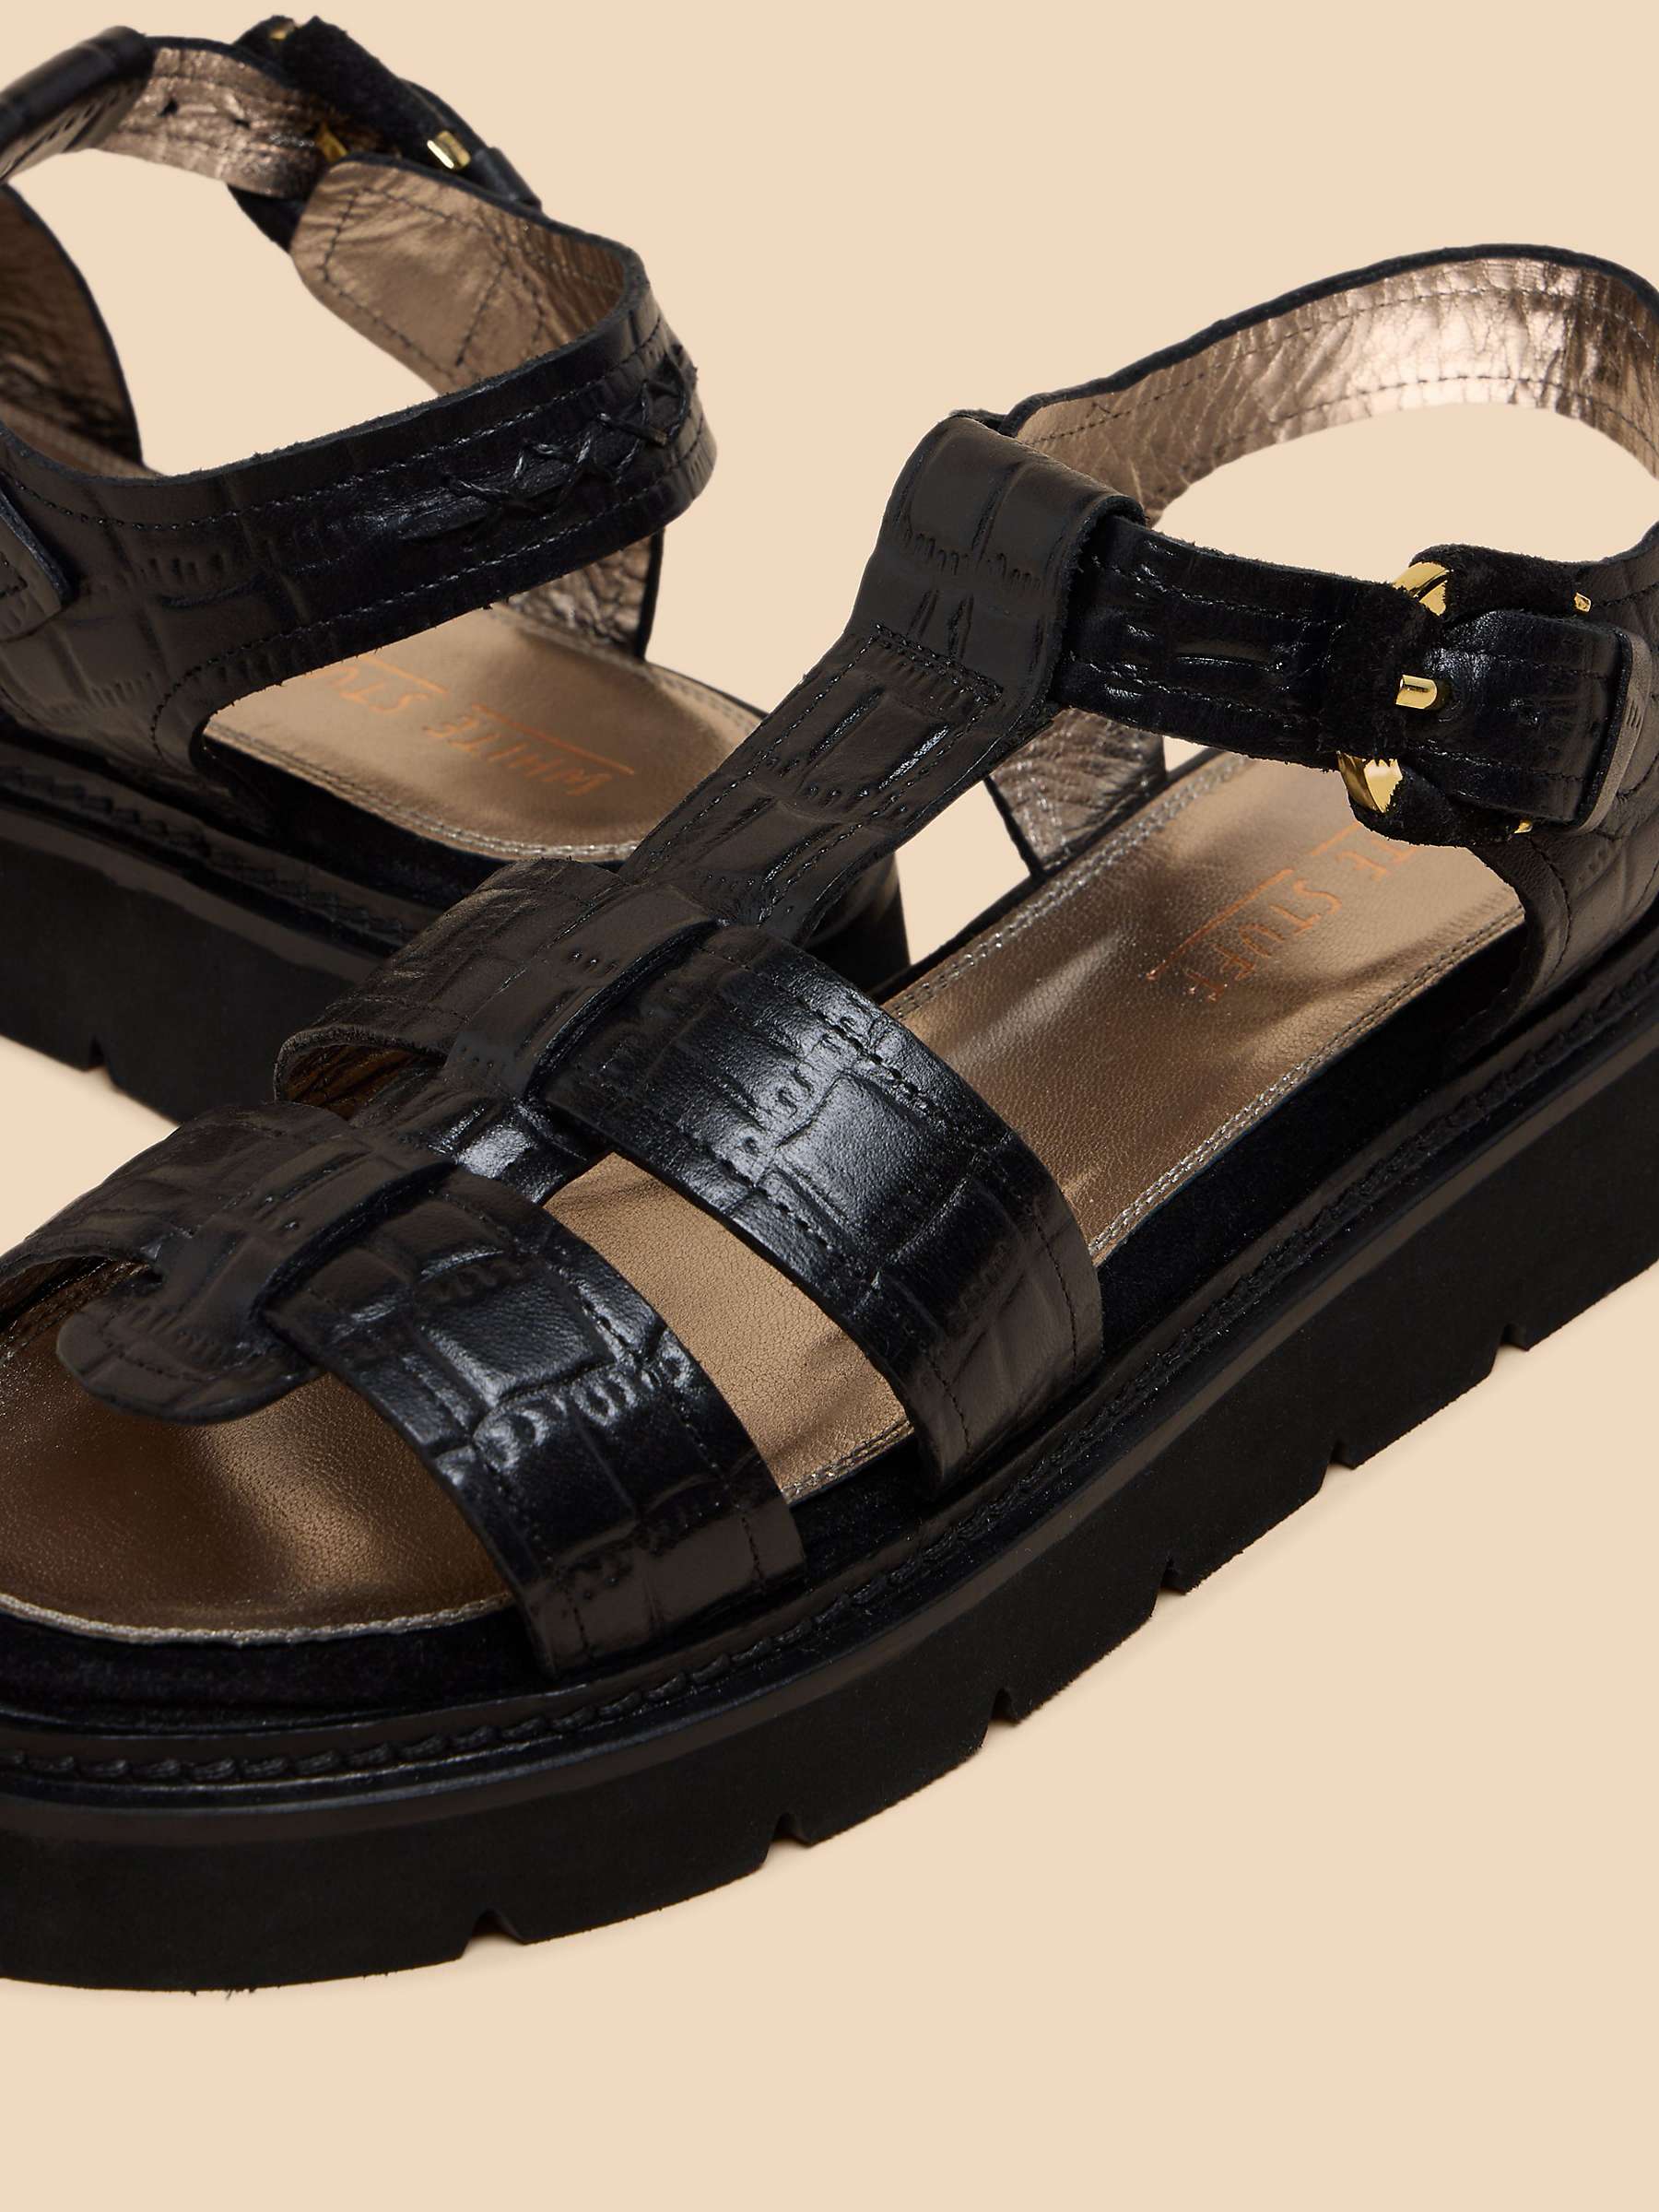 Buy White Stuff Rose Croc Effect Leather Flatform Sandals, Black Online at johnlewis.com